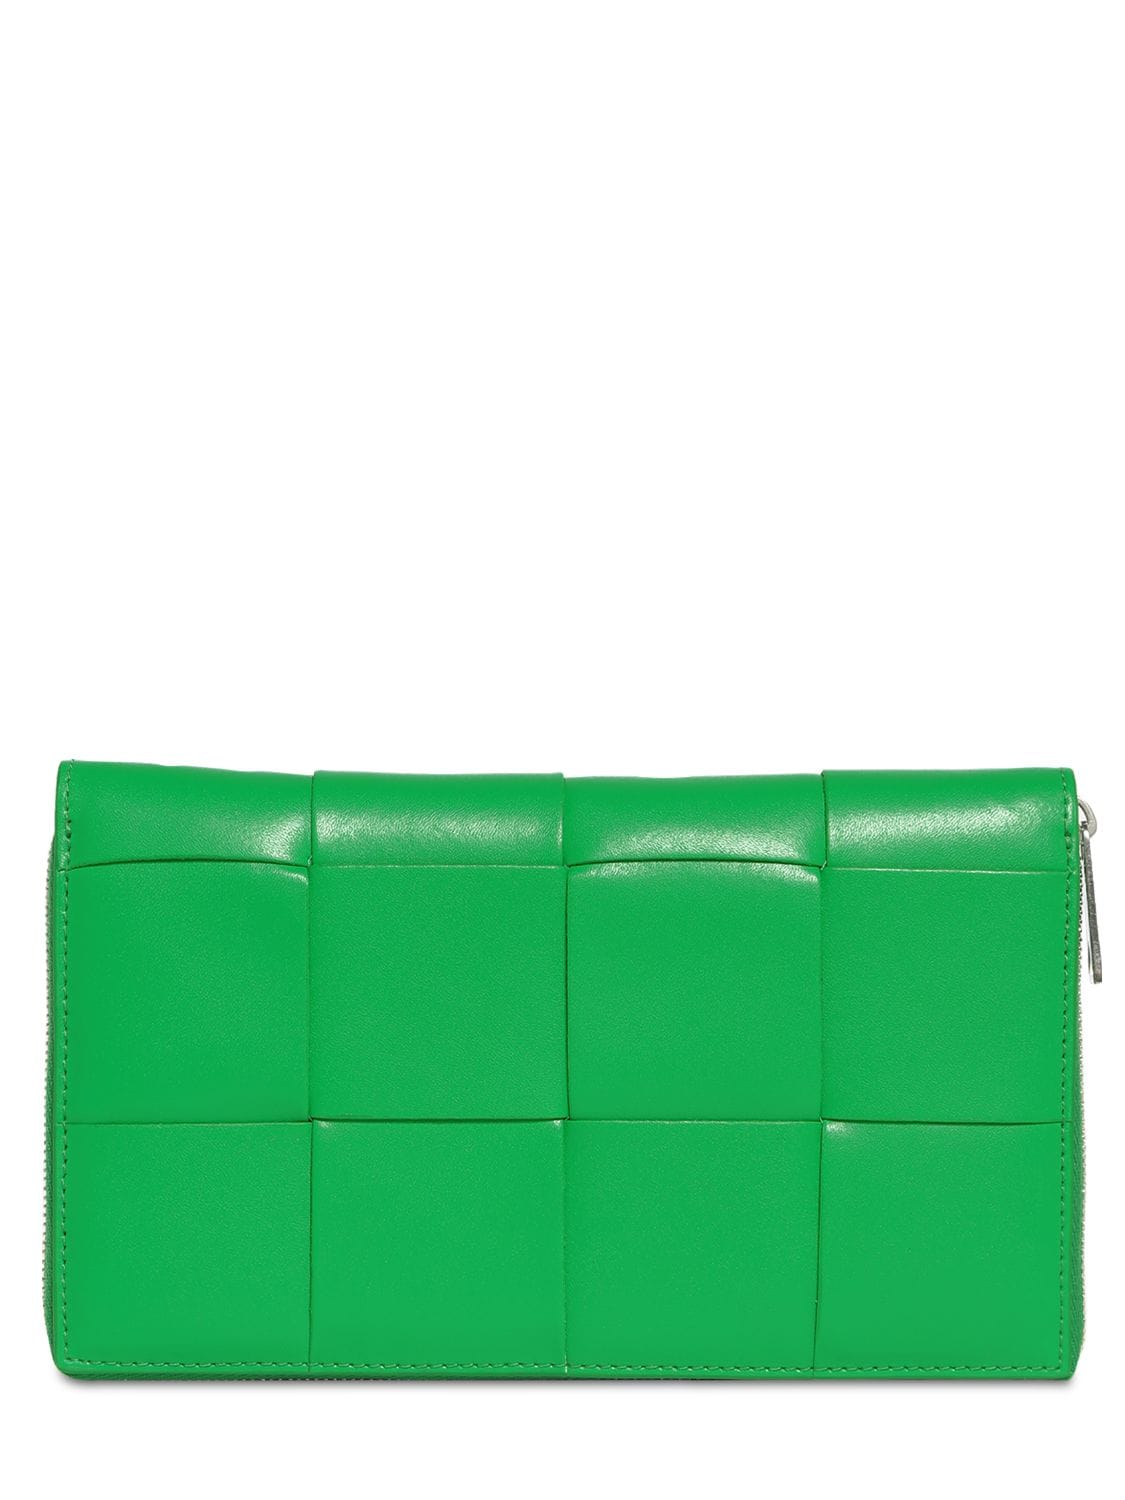 Bottega Veneta Maxi Intreccio Leather Zip Around Wallet In Parakeet